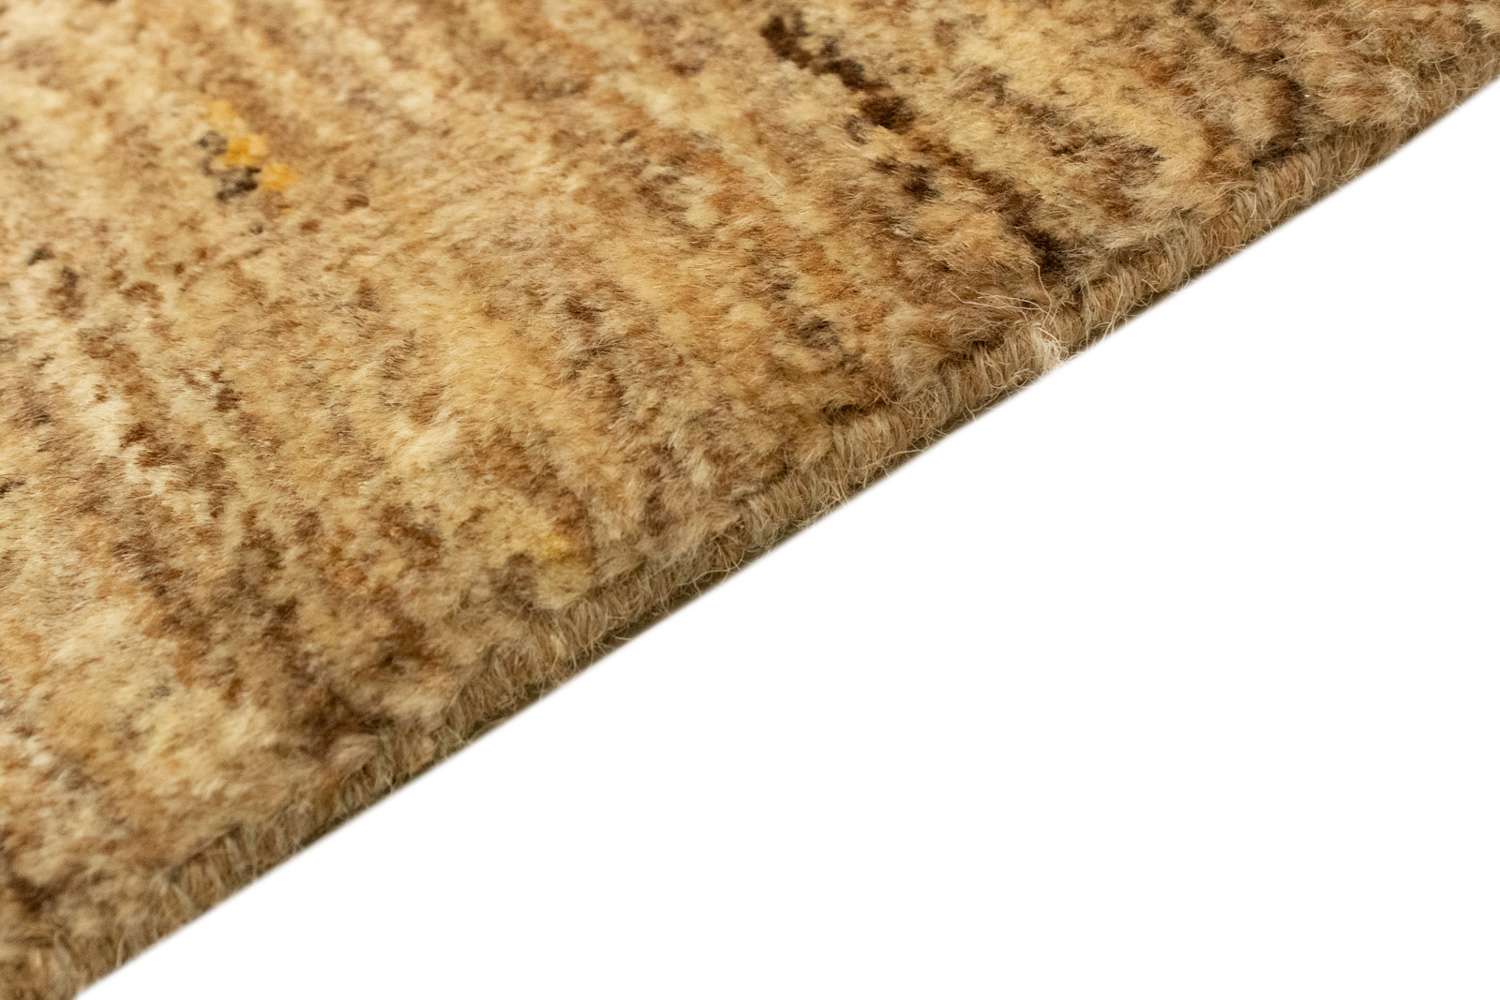 Gabbeh koberec - Indus - 92 x 61 cm - béžová